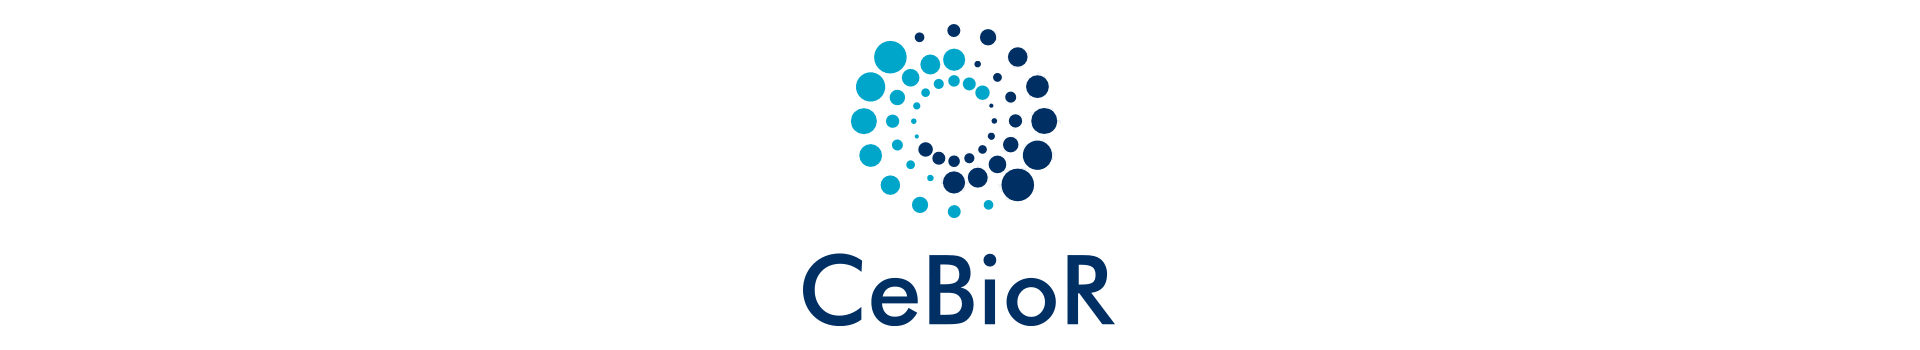 CeBioR logo (Centre for Biomarker Research)